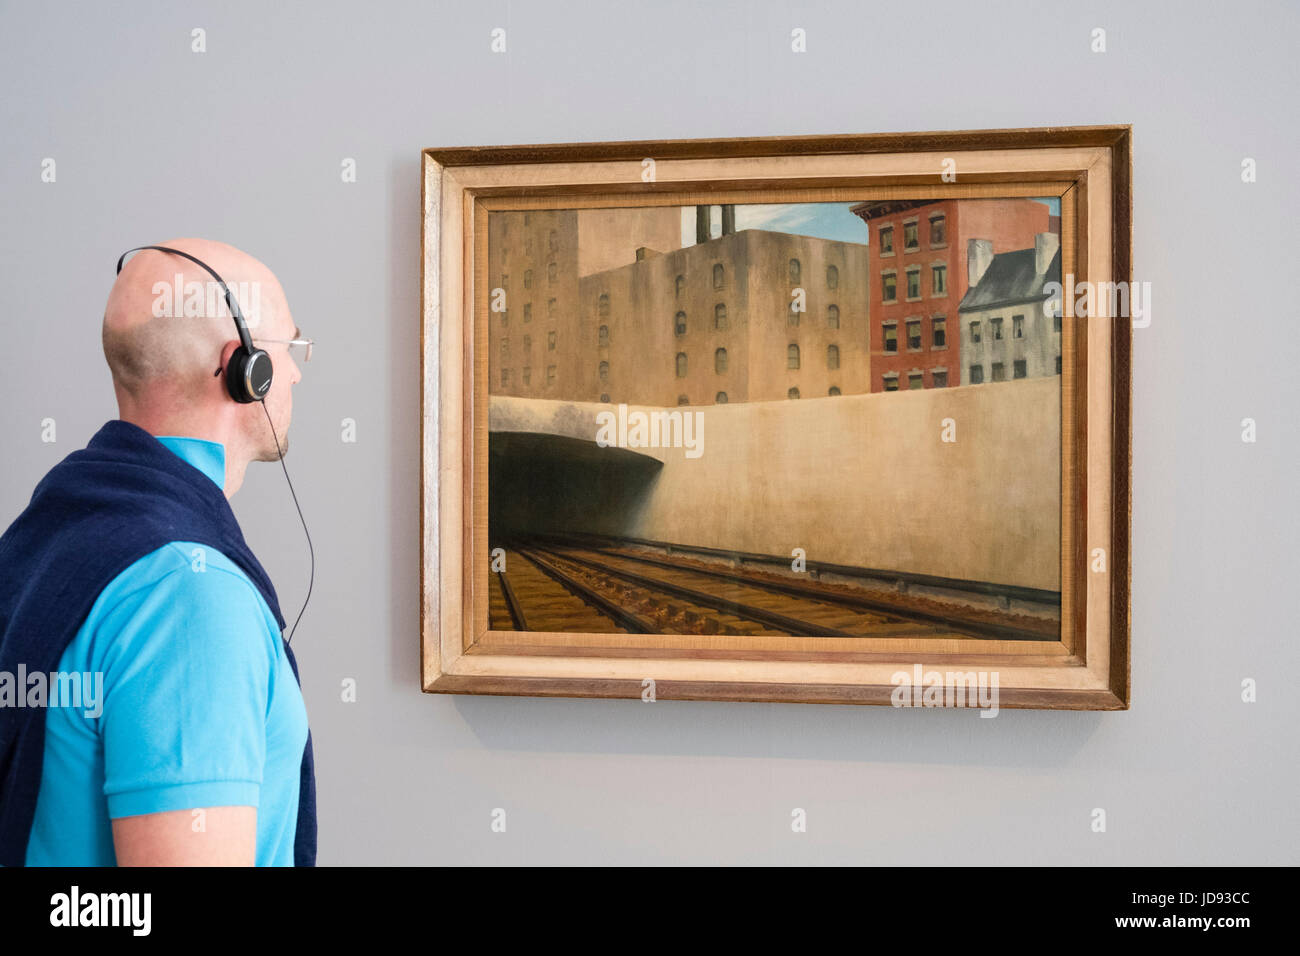 Man nähert sich eine Stadt von Edward Hopper, Ausstellung der amerikanischen Kunst, von Hopper, Rothko Barberini im Potsdam Museum Gemälde betrachten Stockfoto